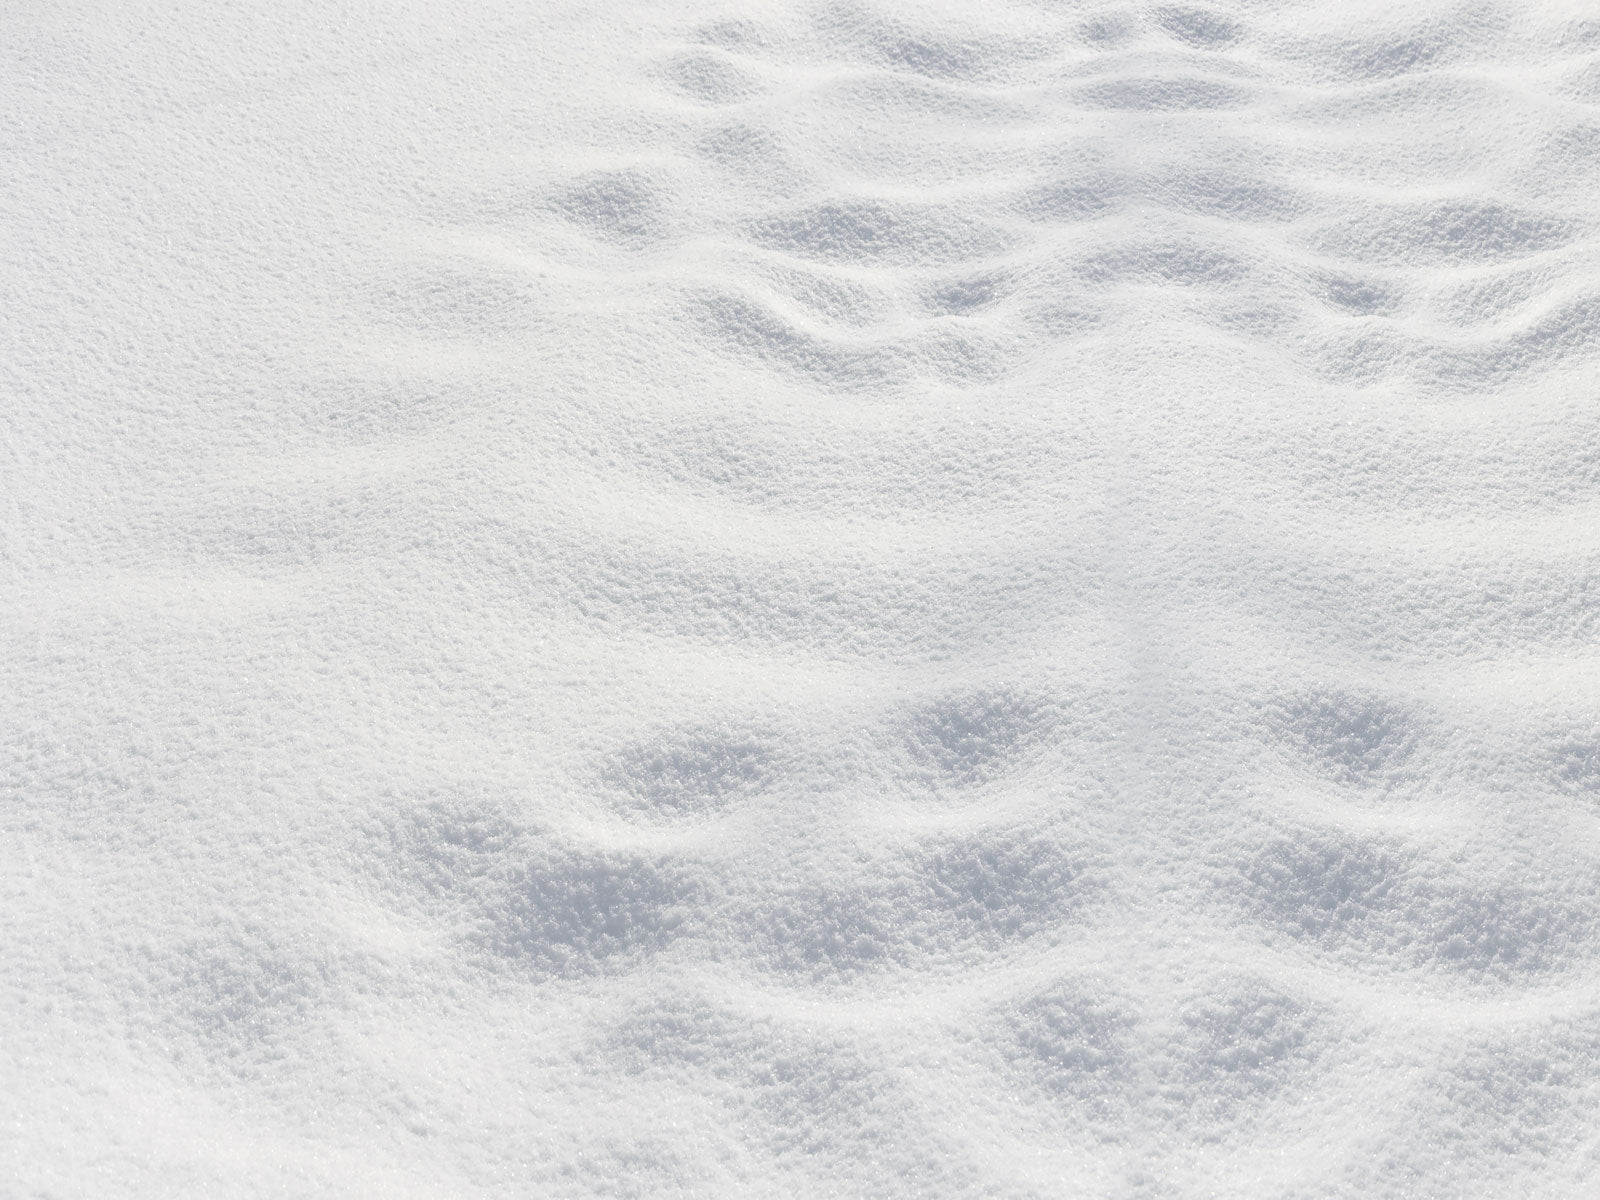 Kate Winter Schnee Bodenmatte  für die Fotografie